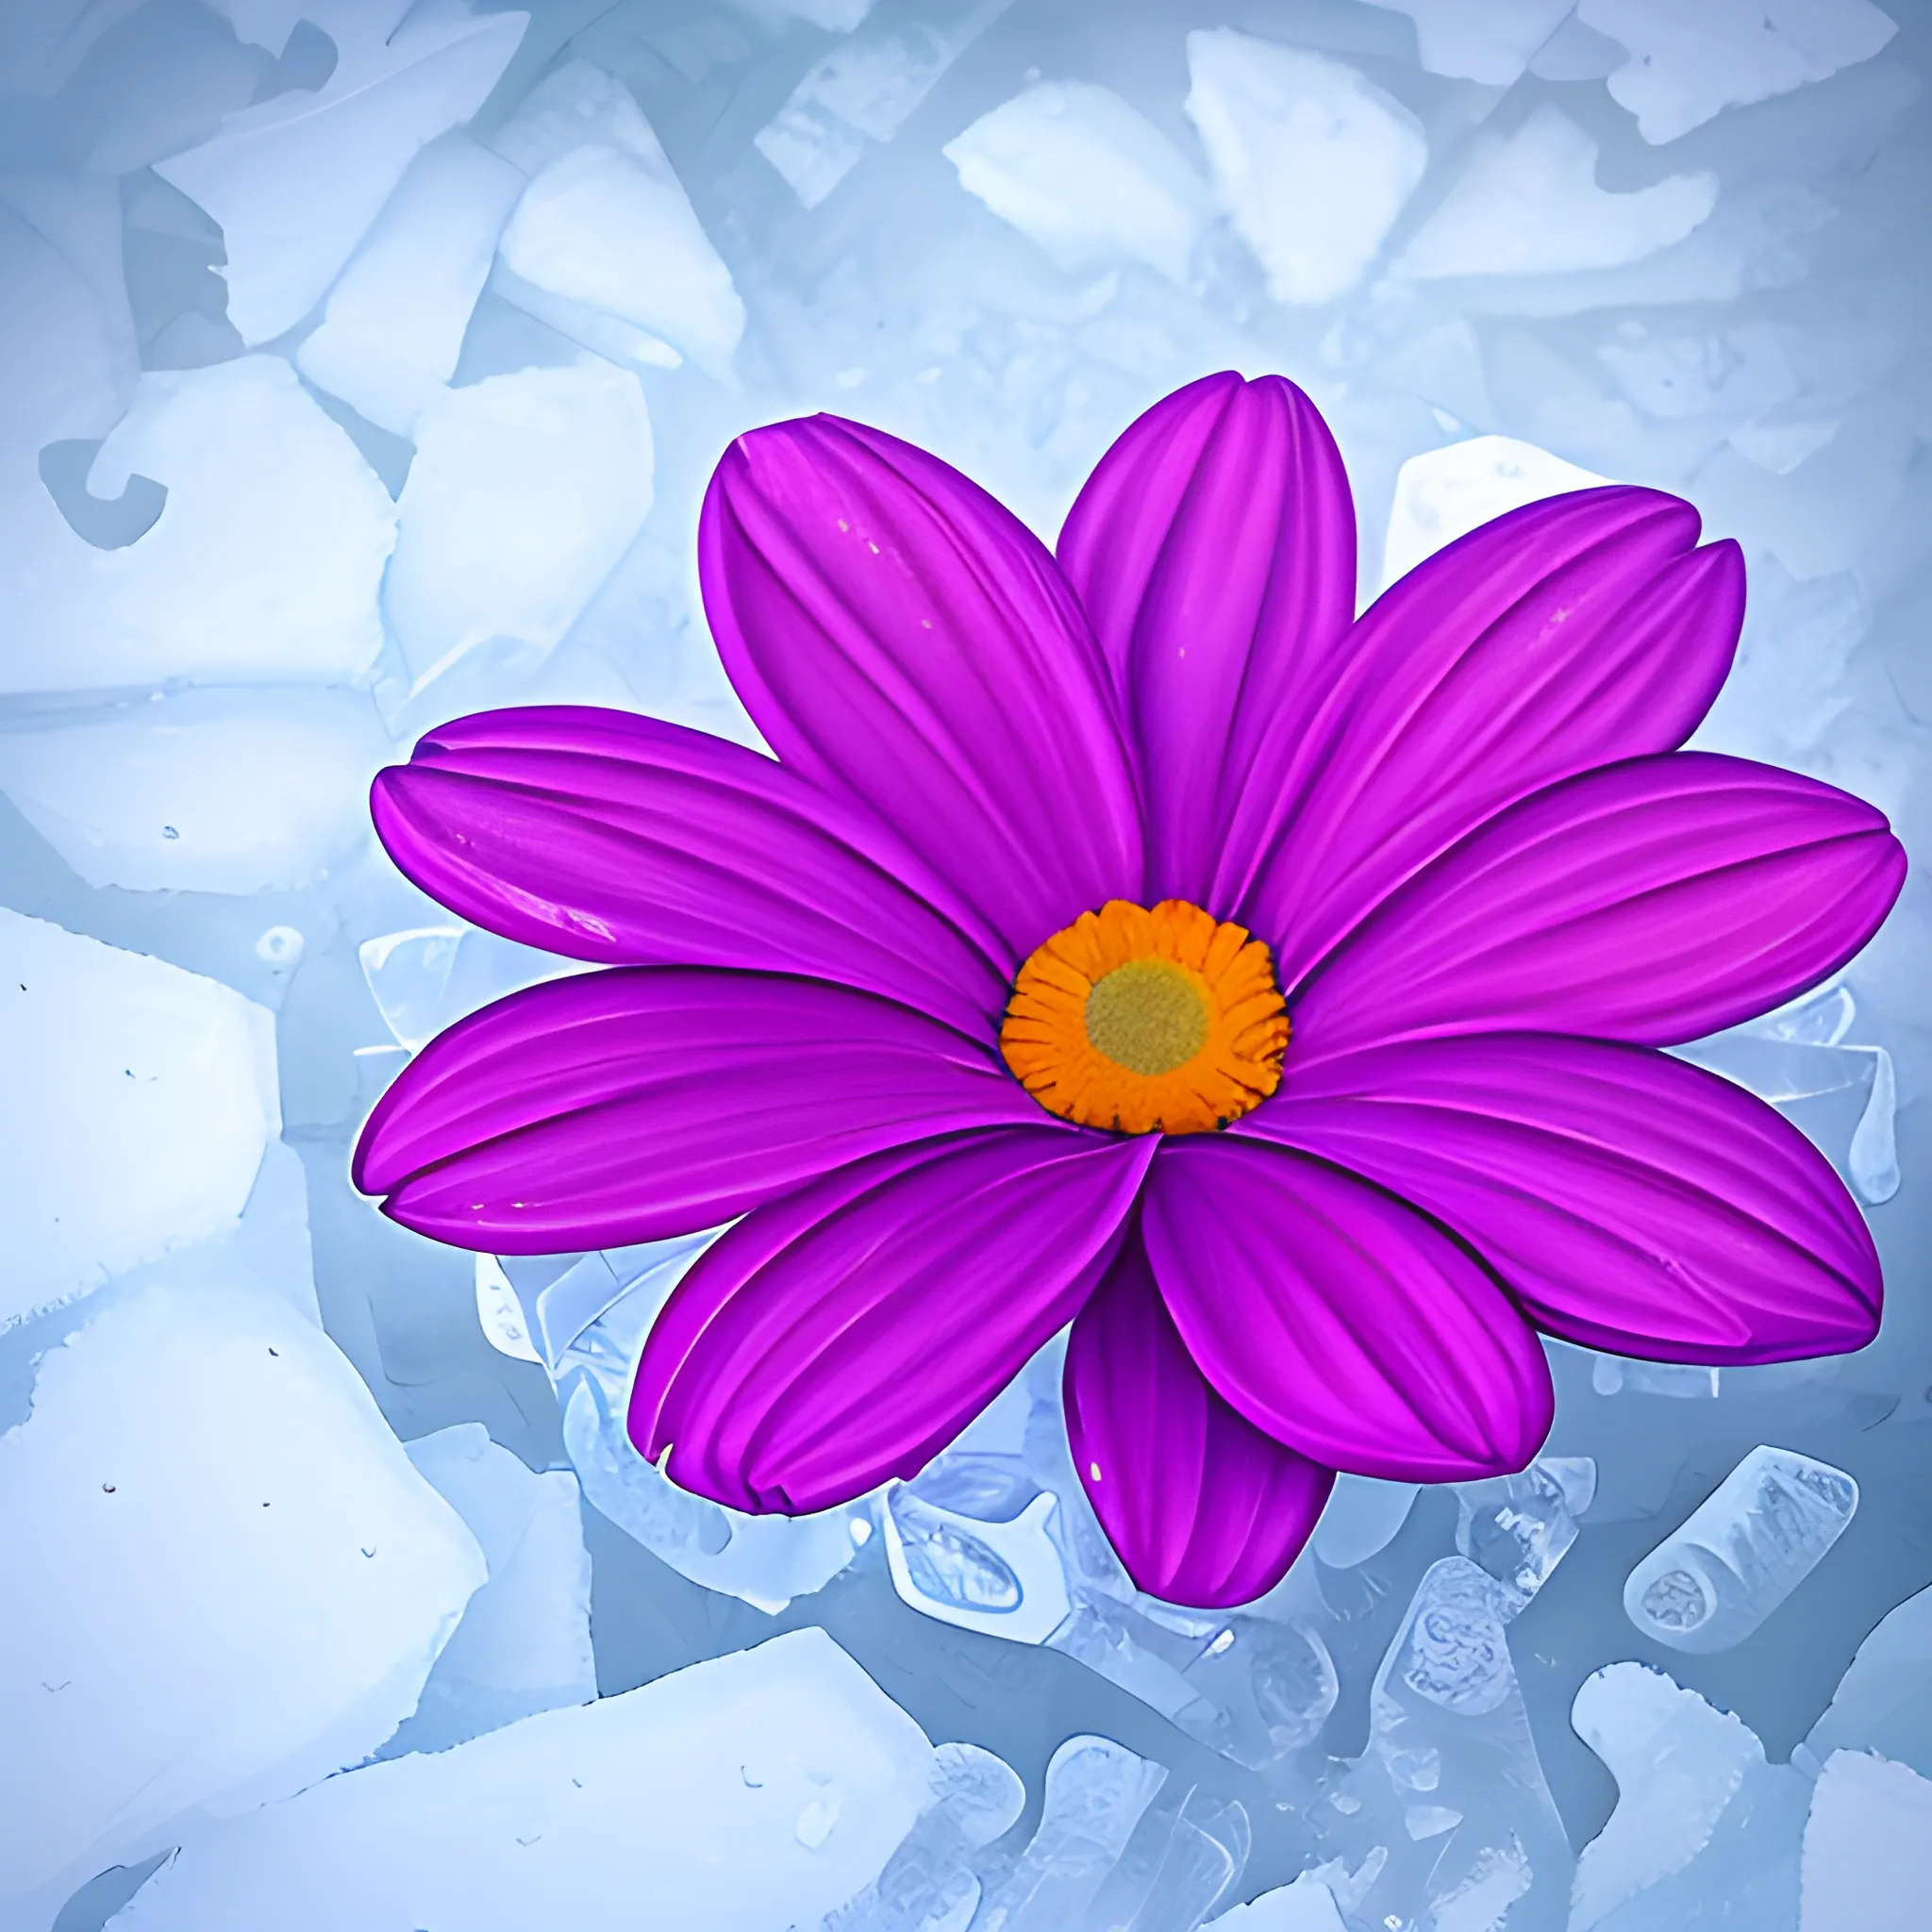 flowers on ice

